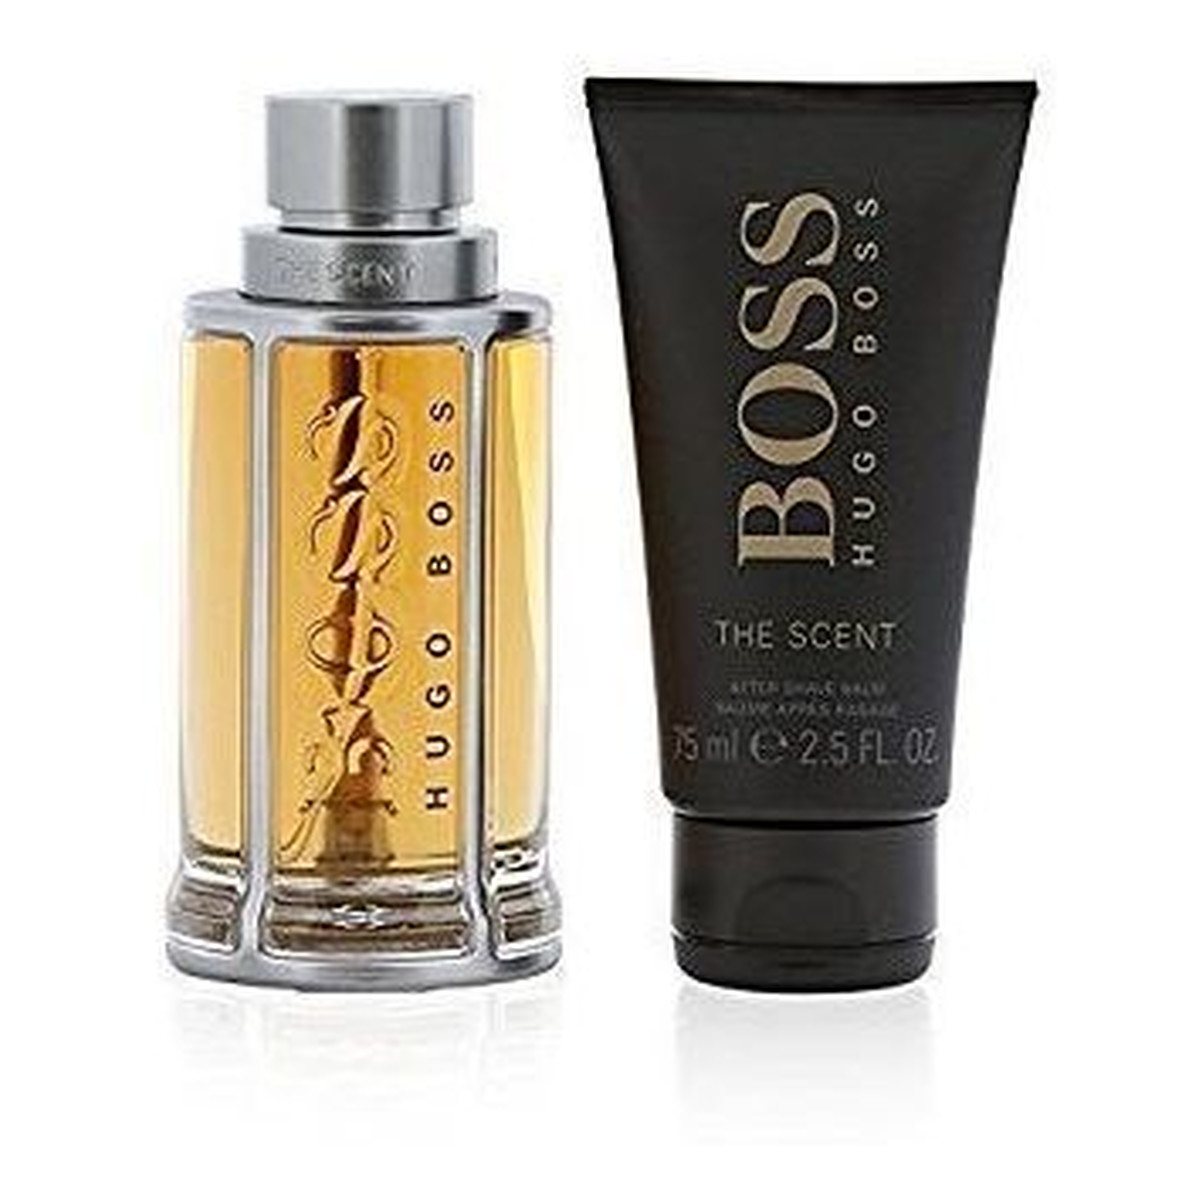 Hugo Boss The Scent For Man Zestaw kosmetyków (woda toaletowa 100ml + Balsam po goleniu 75ml)